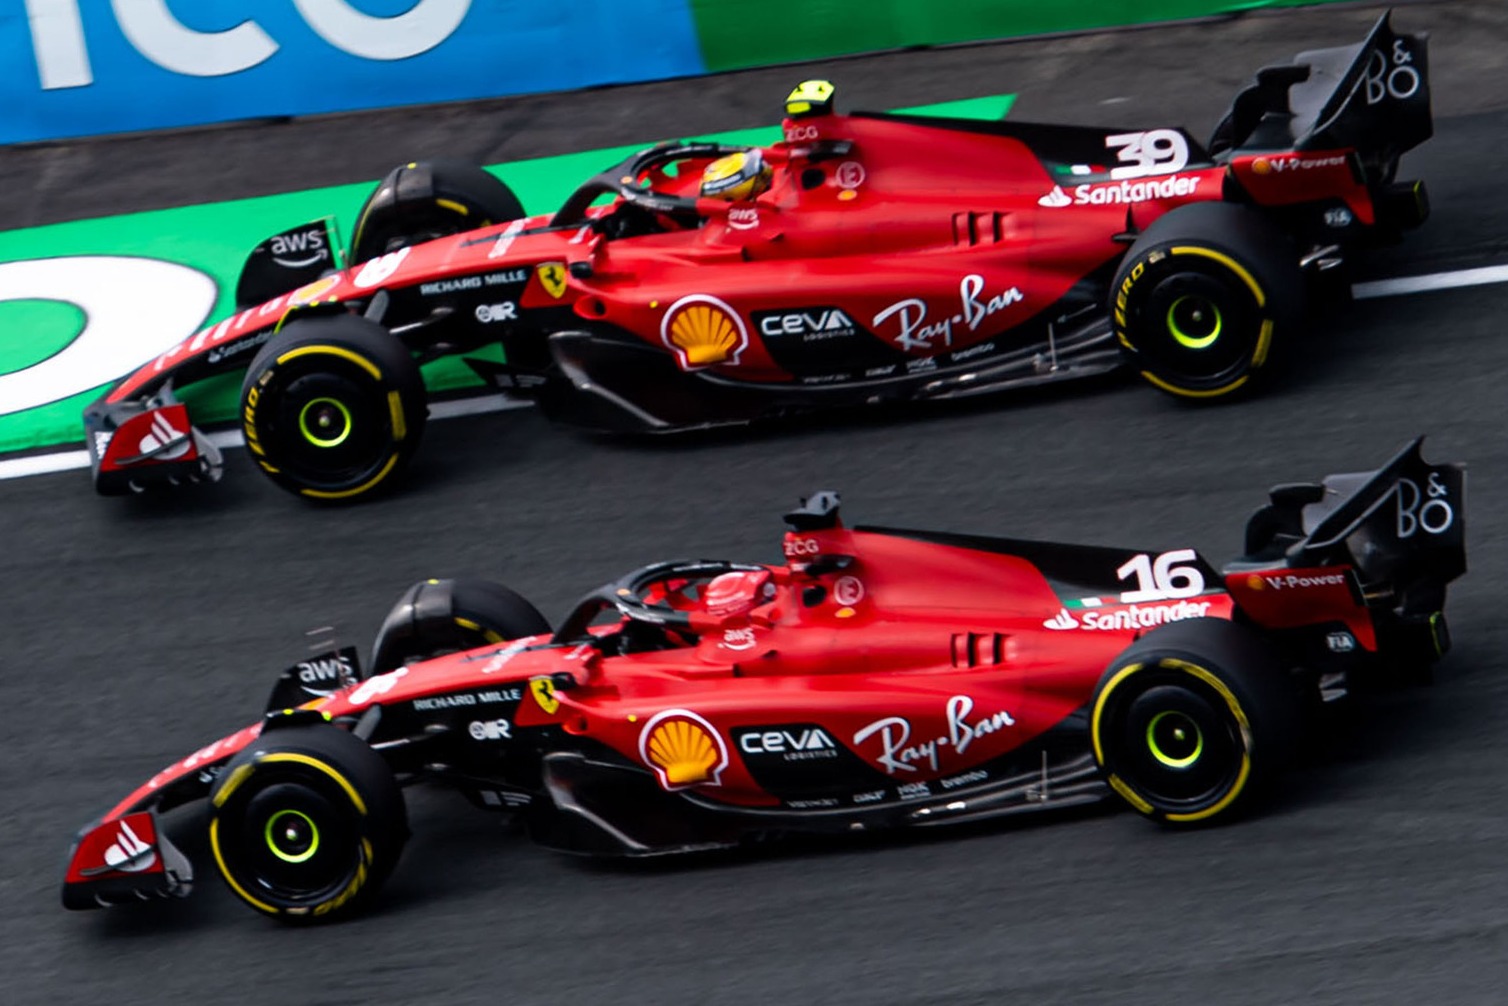 F1 News: Upcoming Ferrari updates for 2023 season revealed